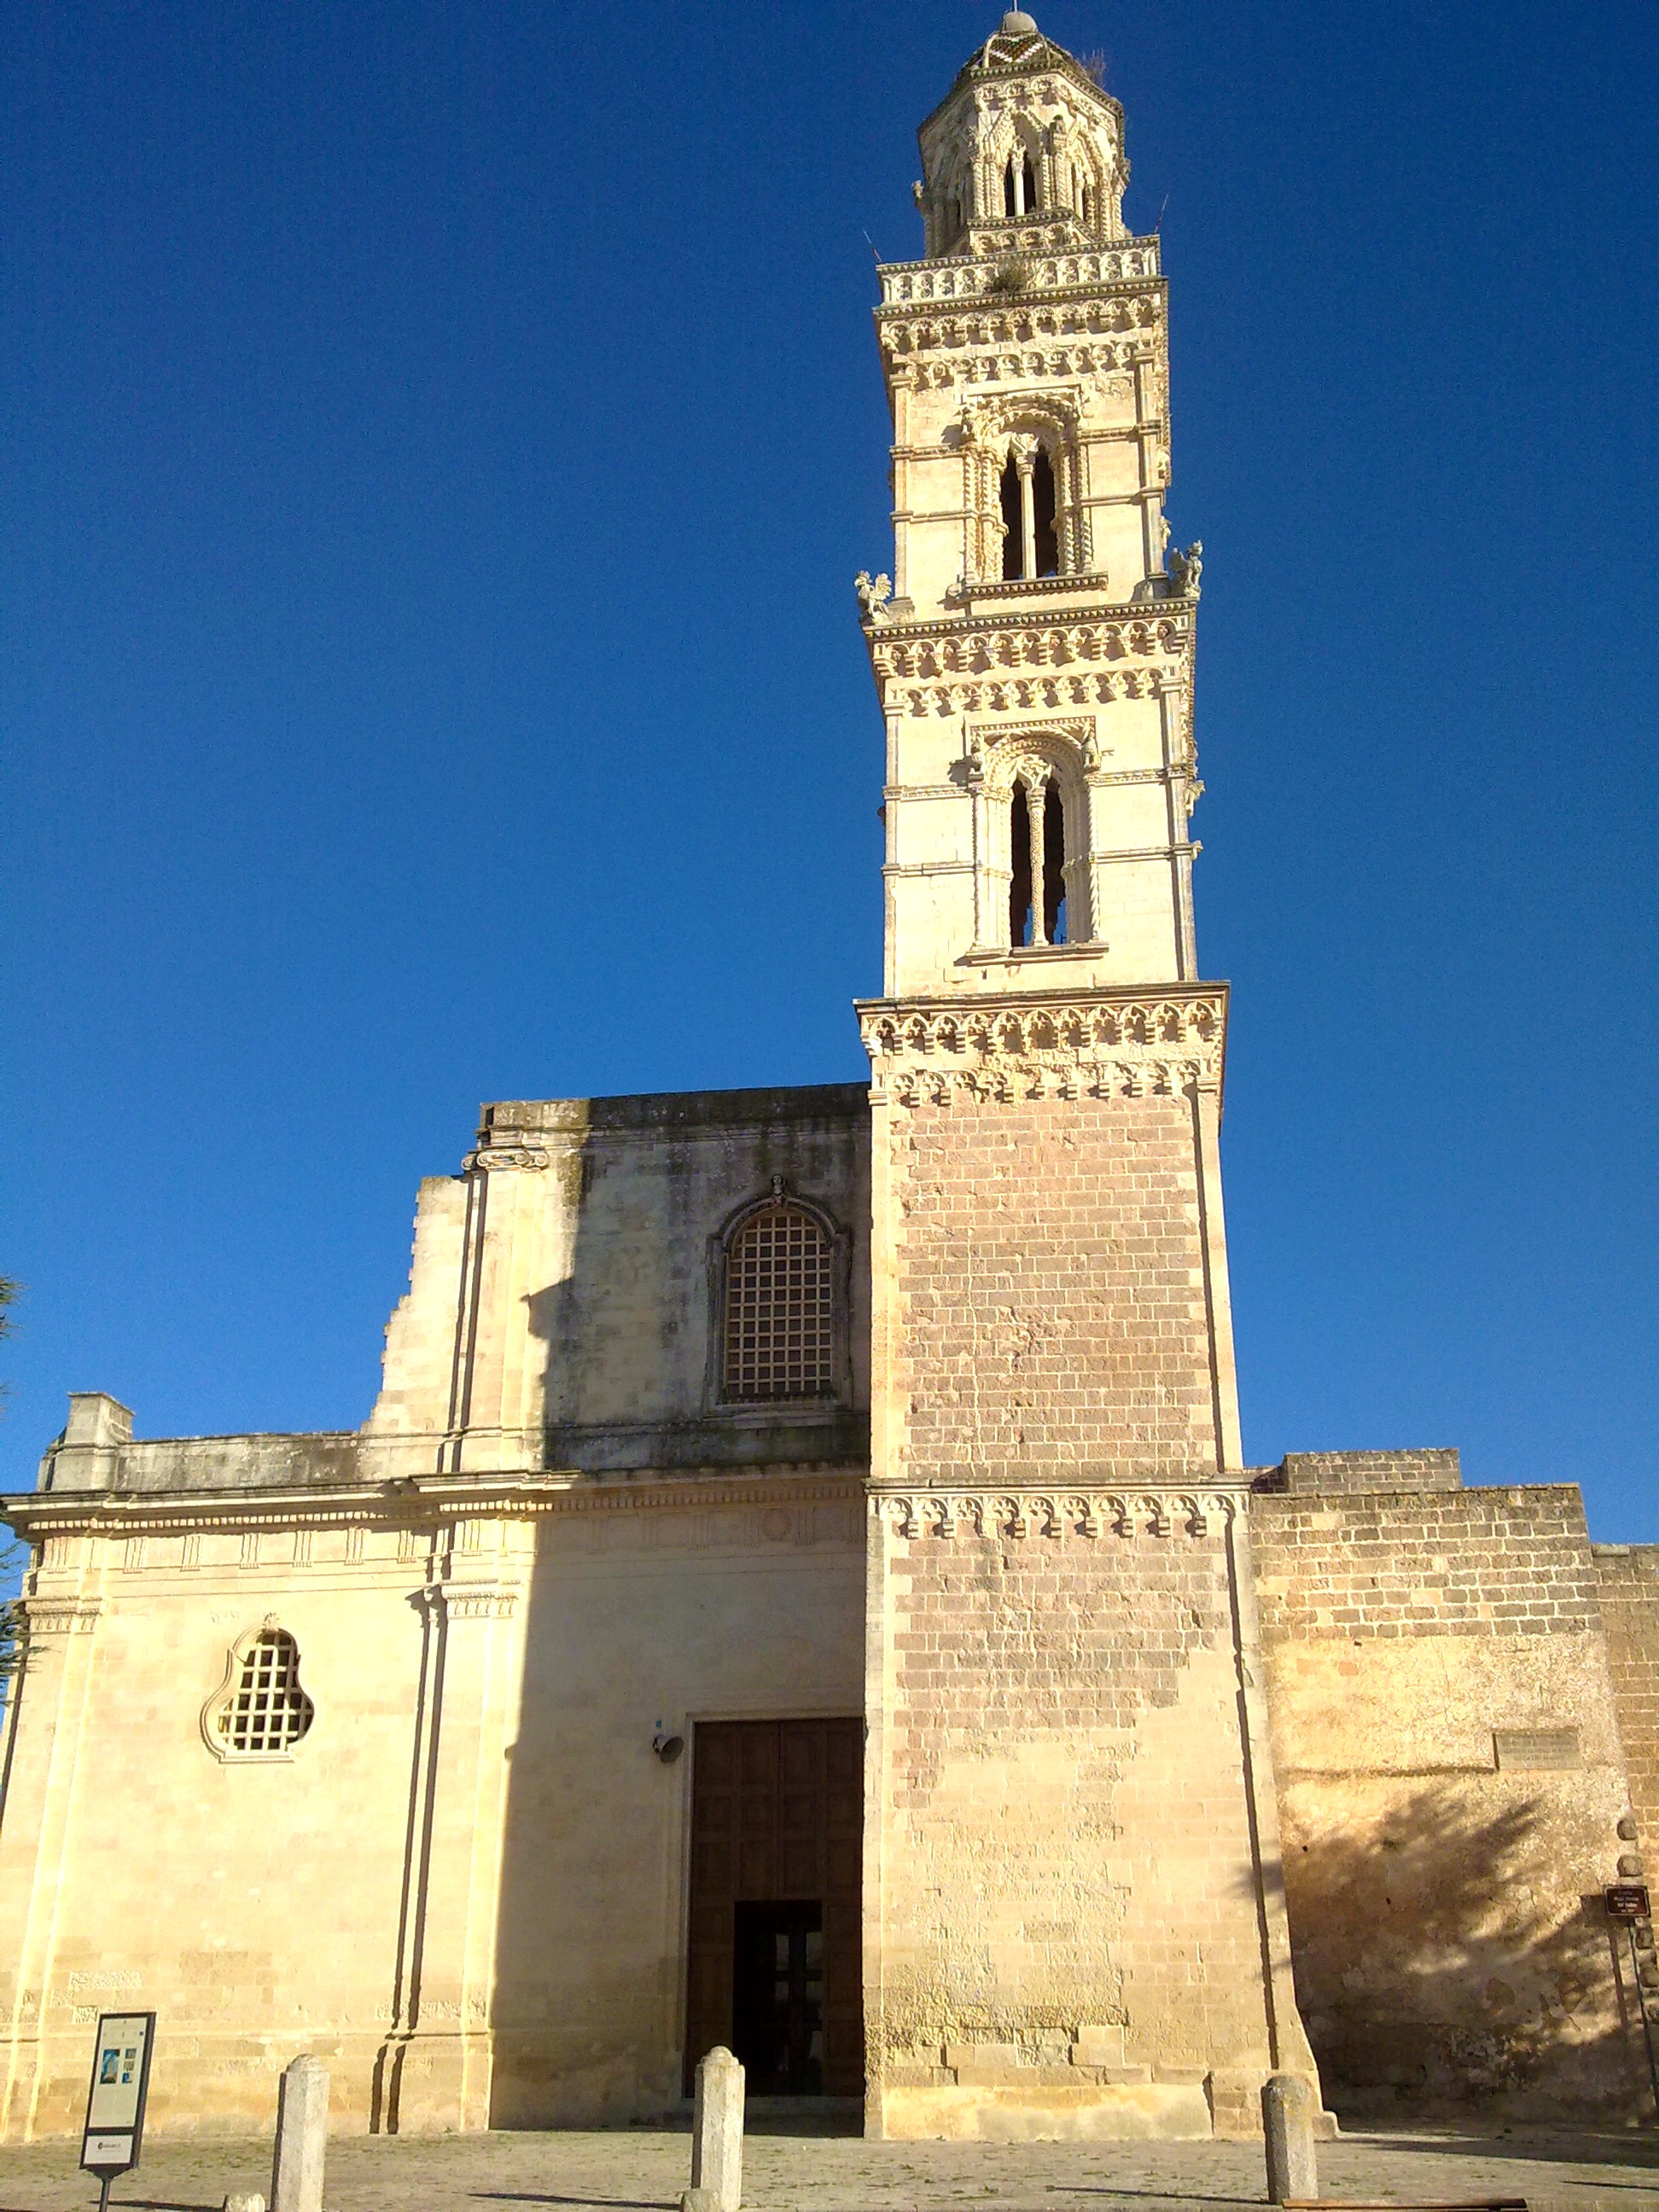 Lupiae, Chiesa e guglia di Soleto, Lecce, 22 November 2010